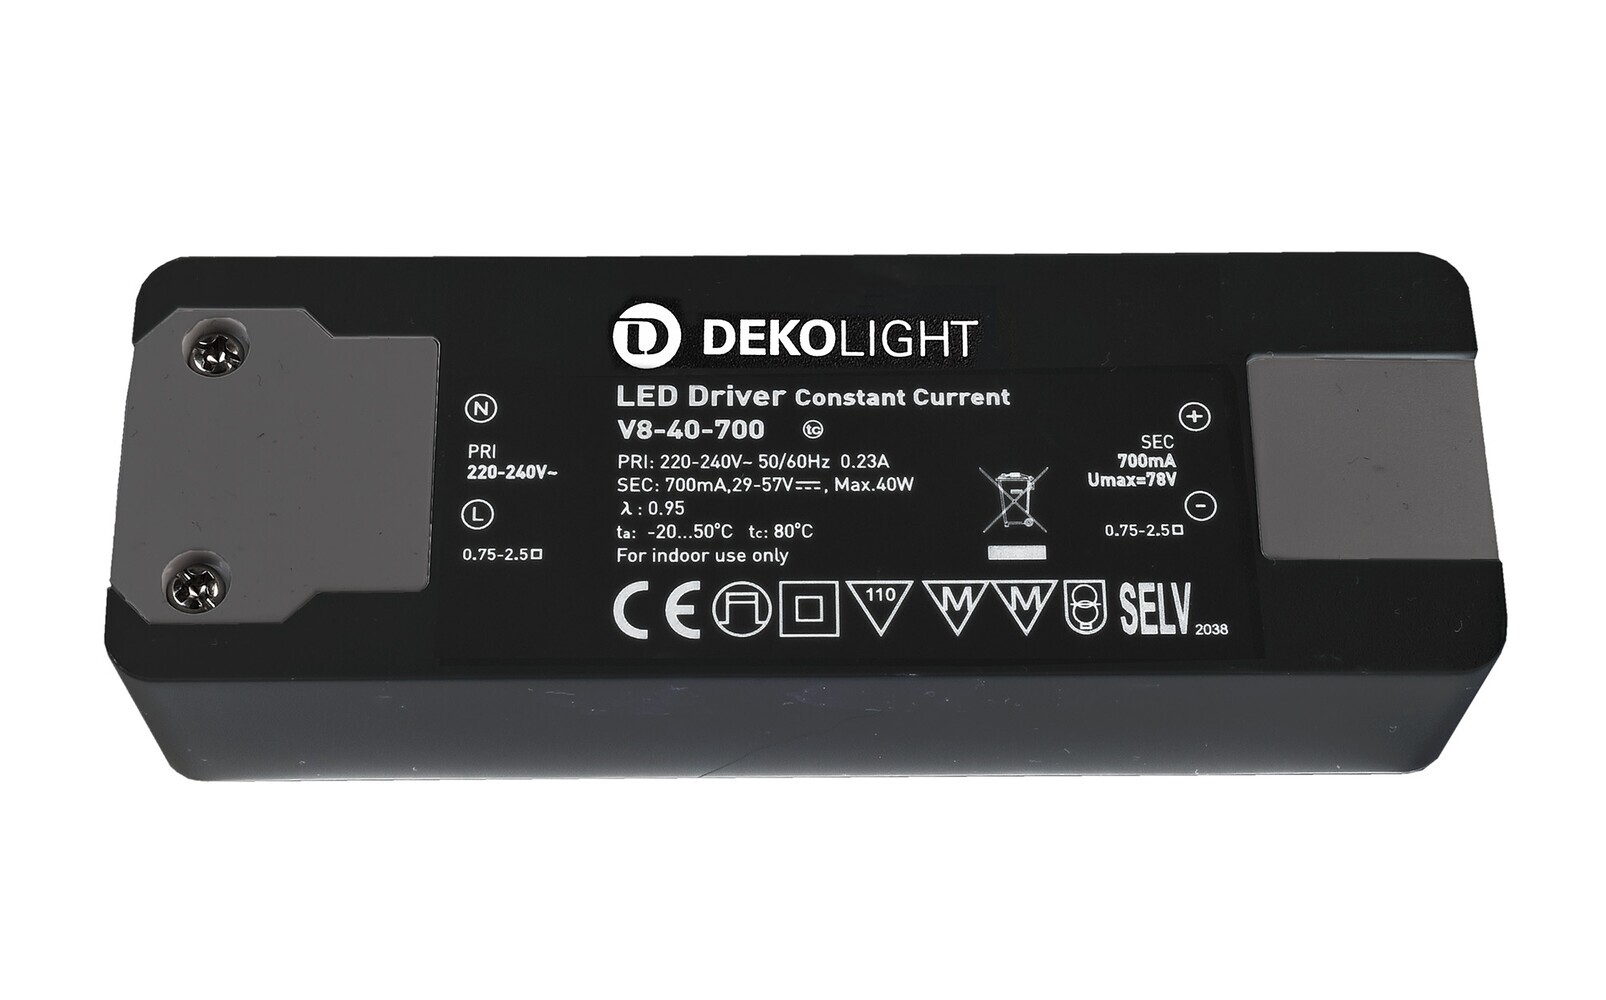 Hochwertiges und langlebiges LED Netzteil von der renommierten Marke Deko-Light